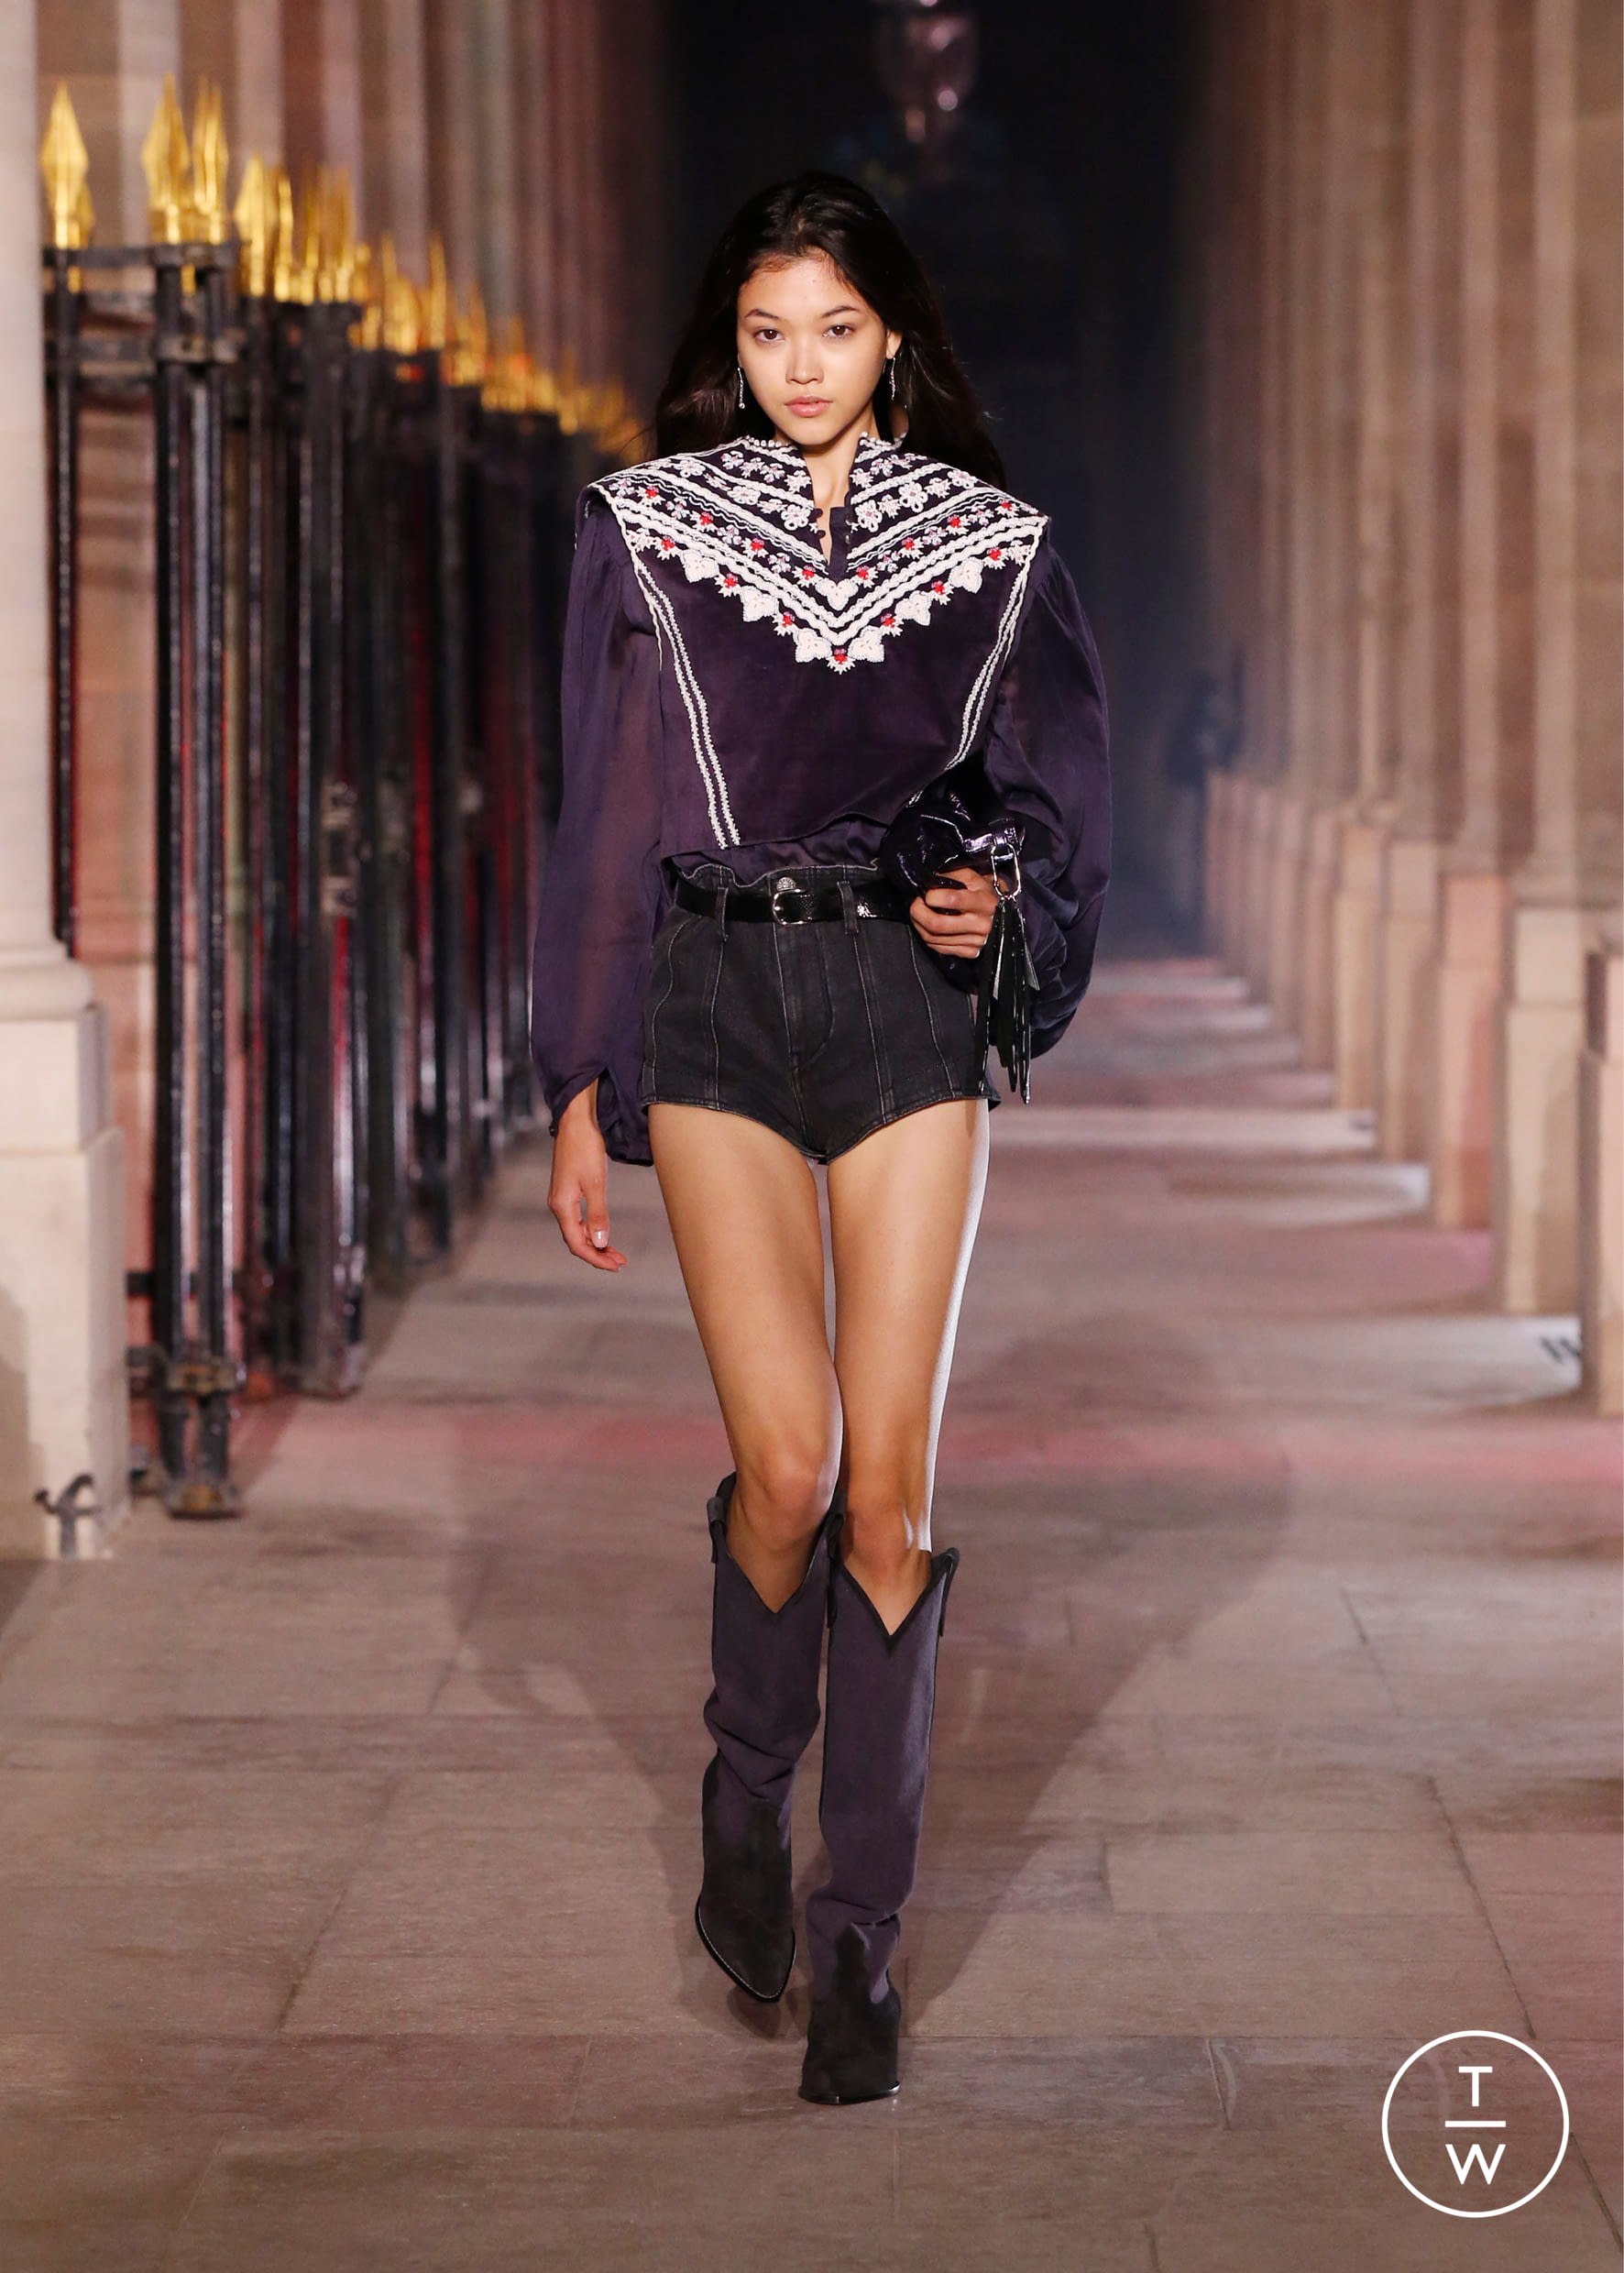 Marant womenswear #38 - Tagwalk: The Fashion